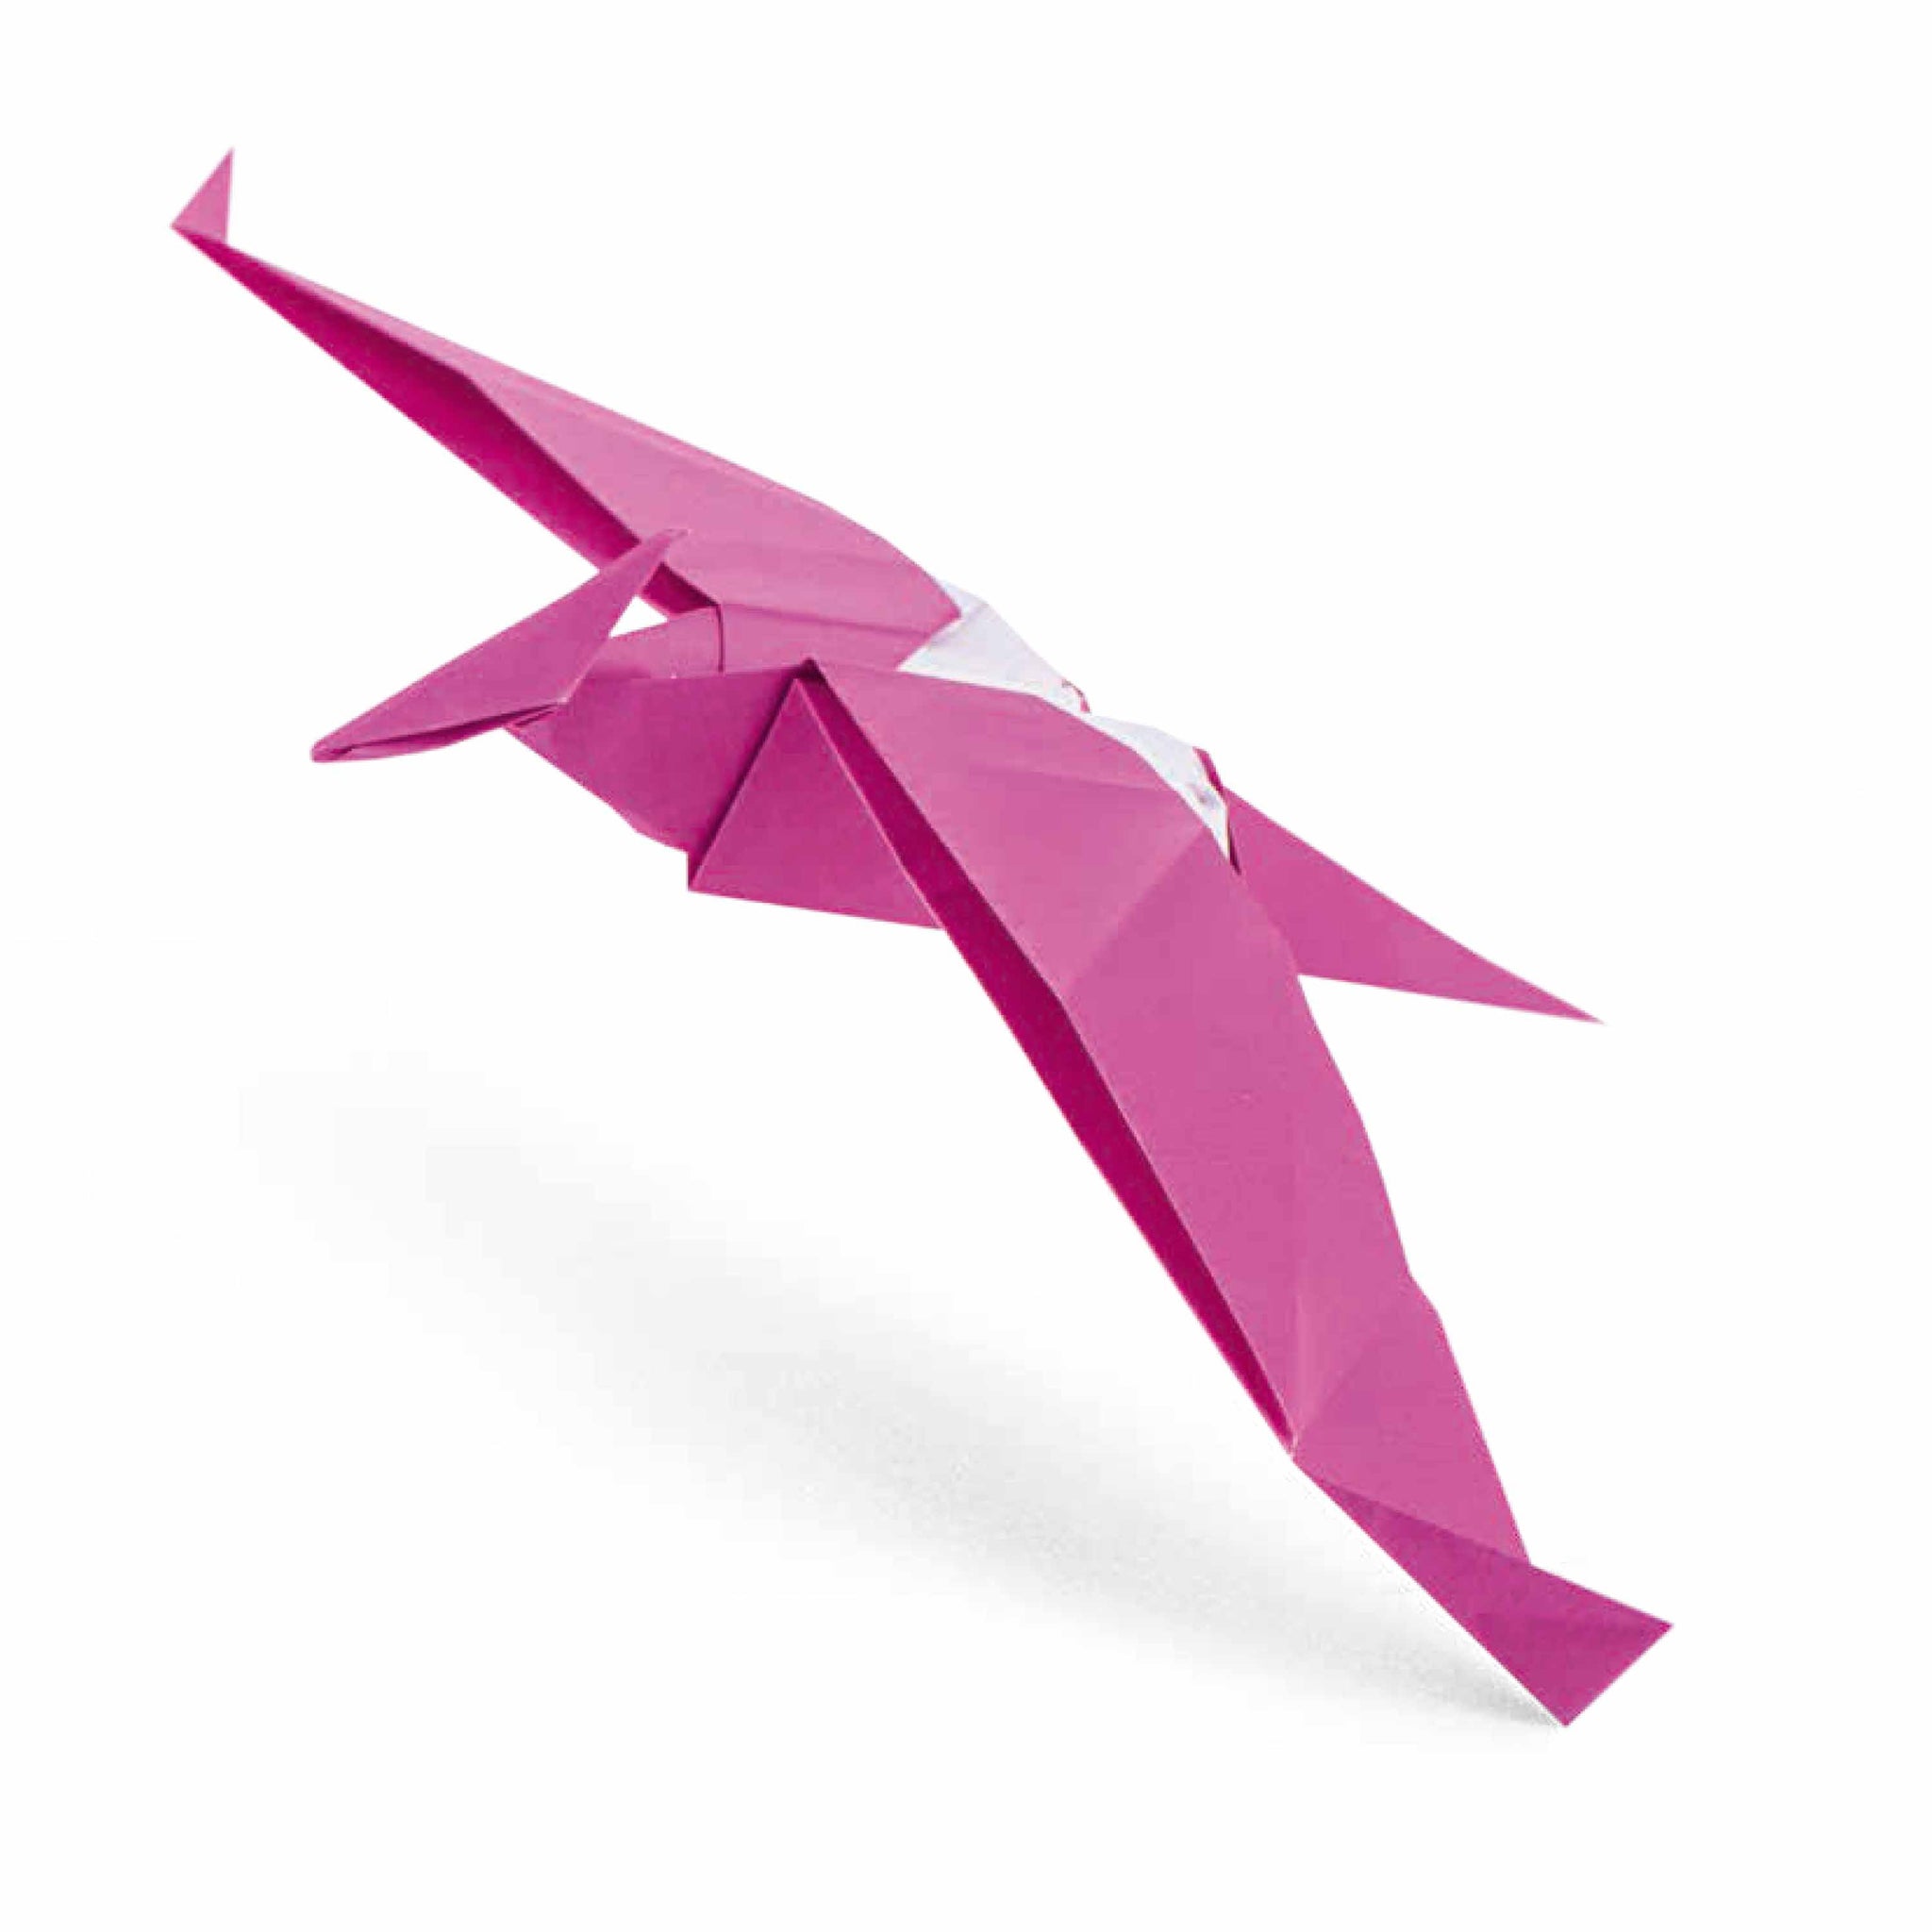 Coffret Géant Origami - 20 Couleurs de l'Arc-en-ciel